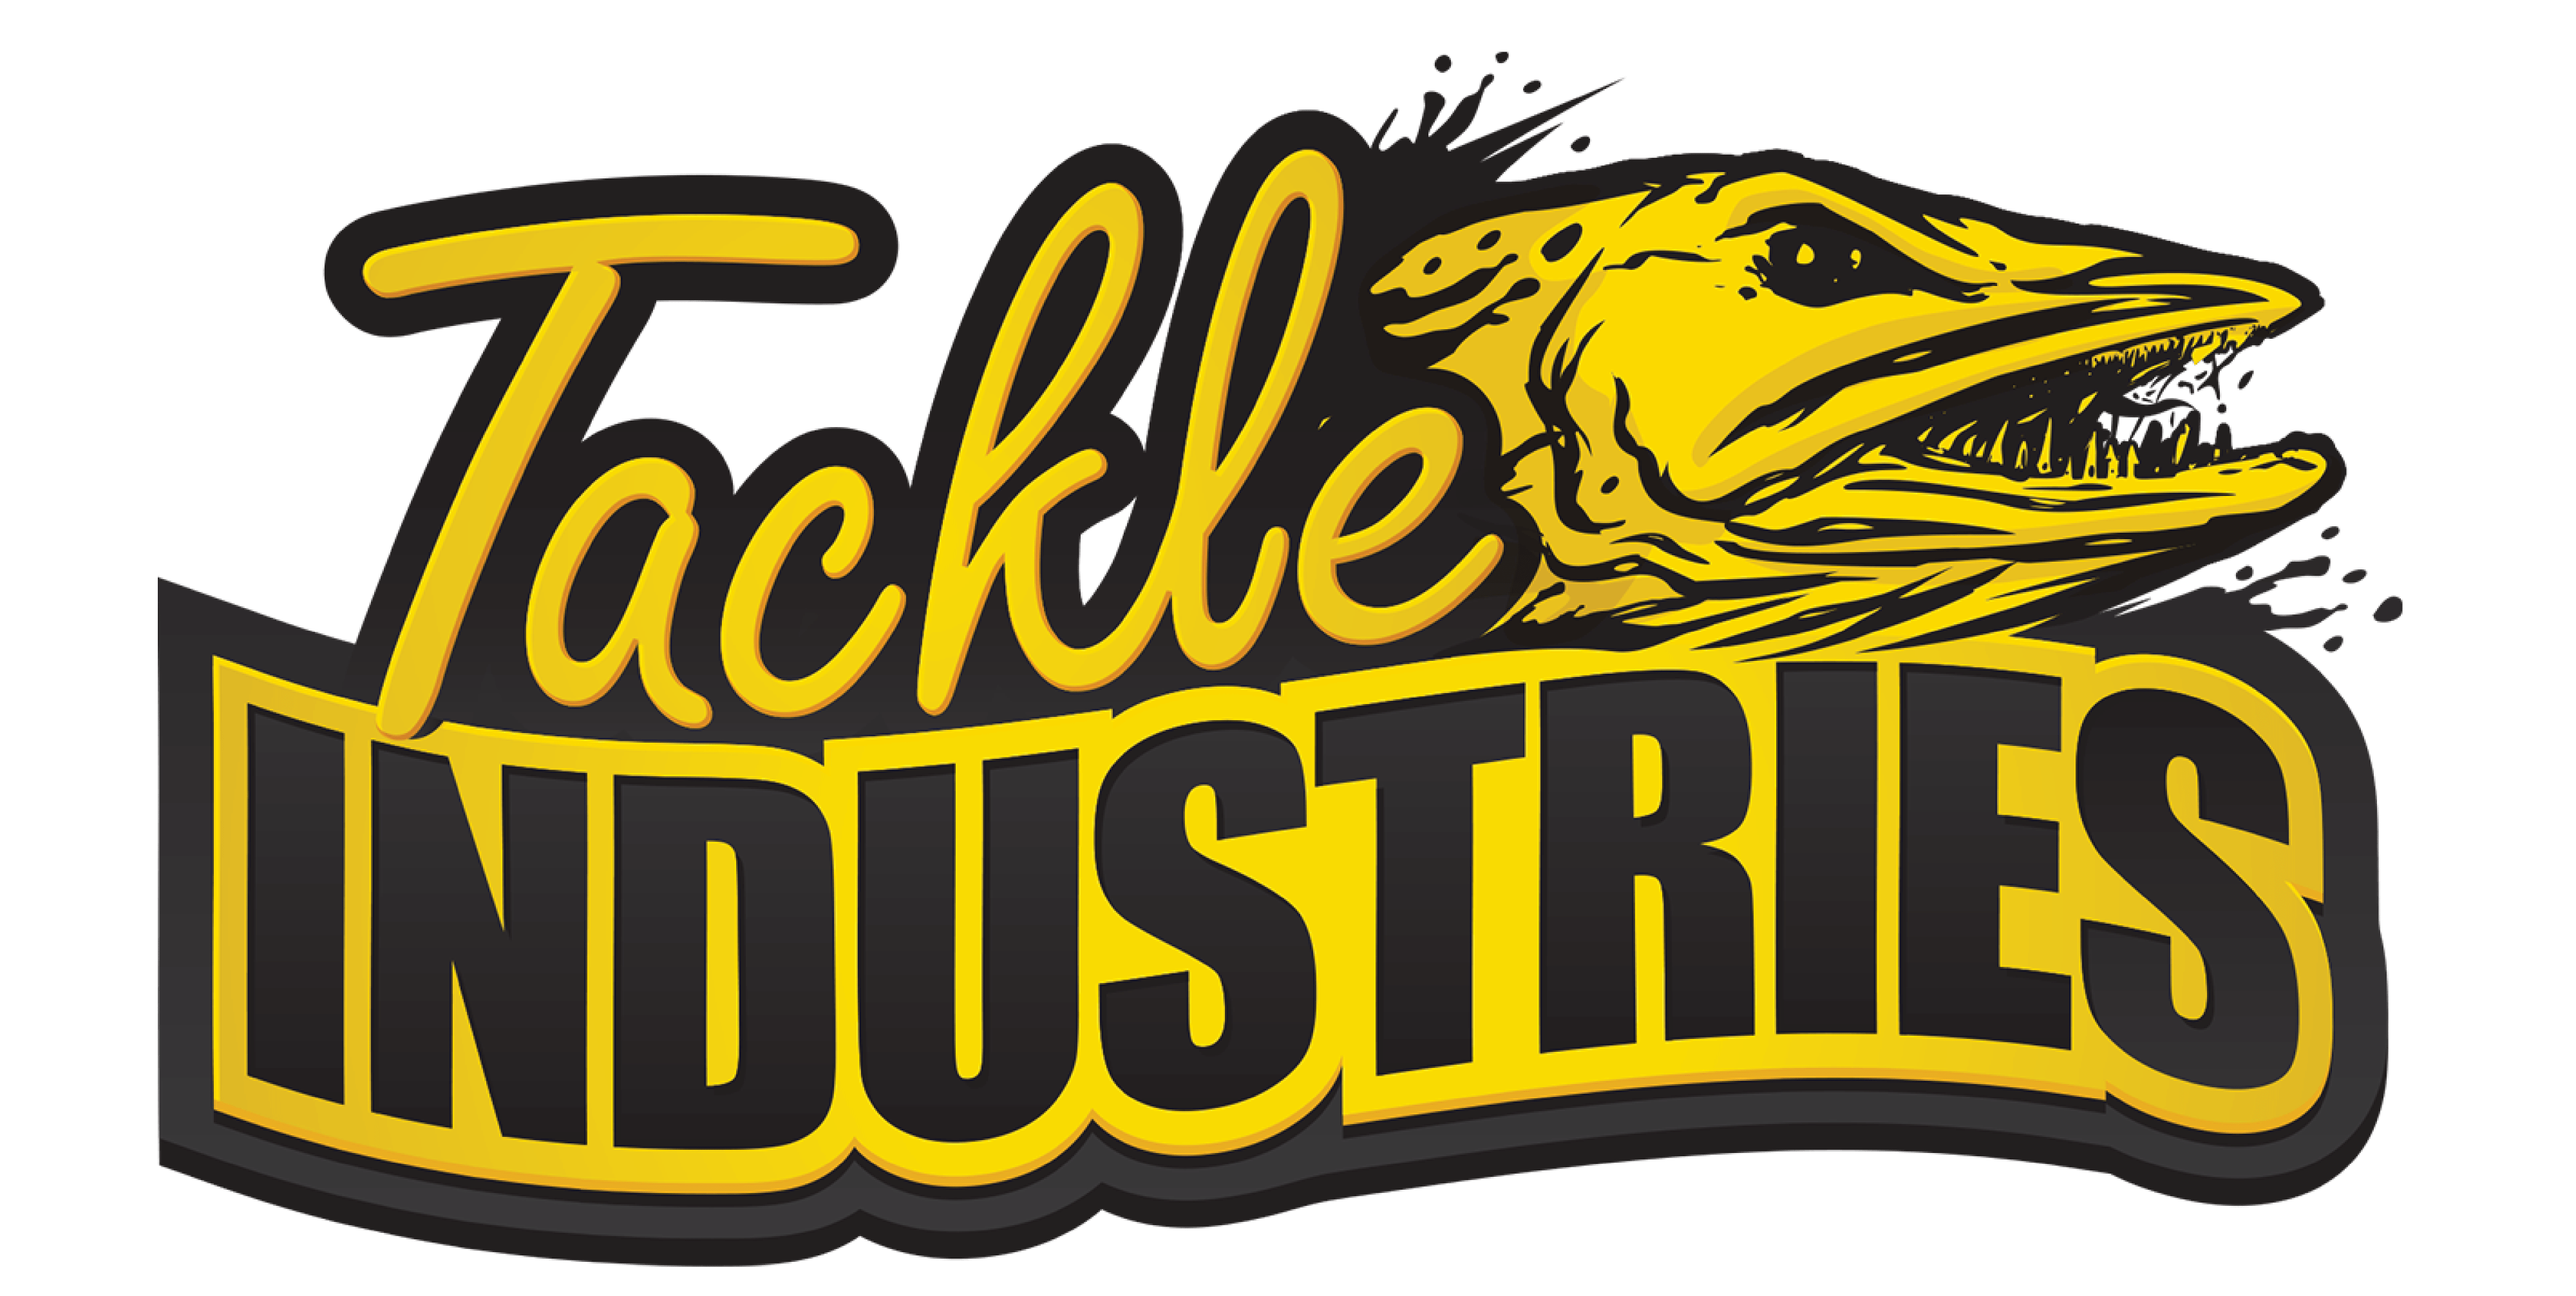 6 Super Cisco - Teaz N' Perch – Tackle Industries